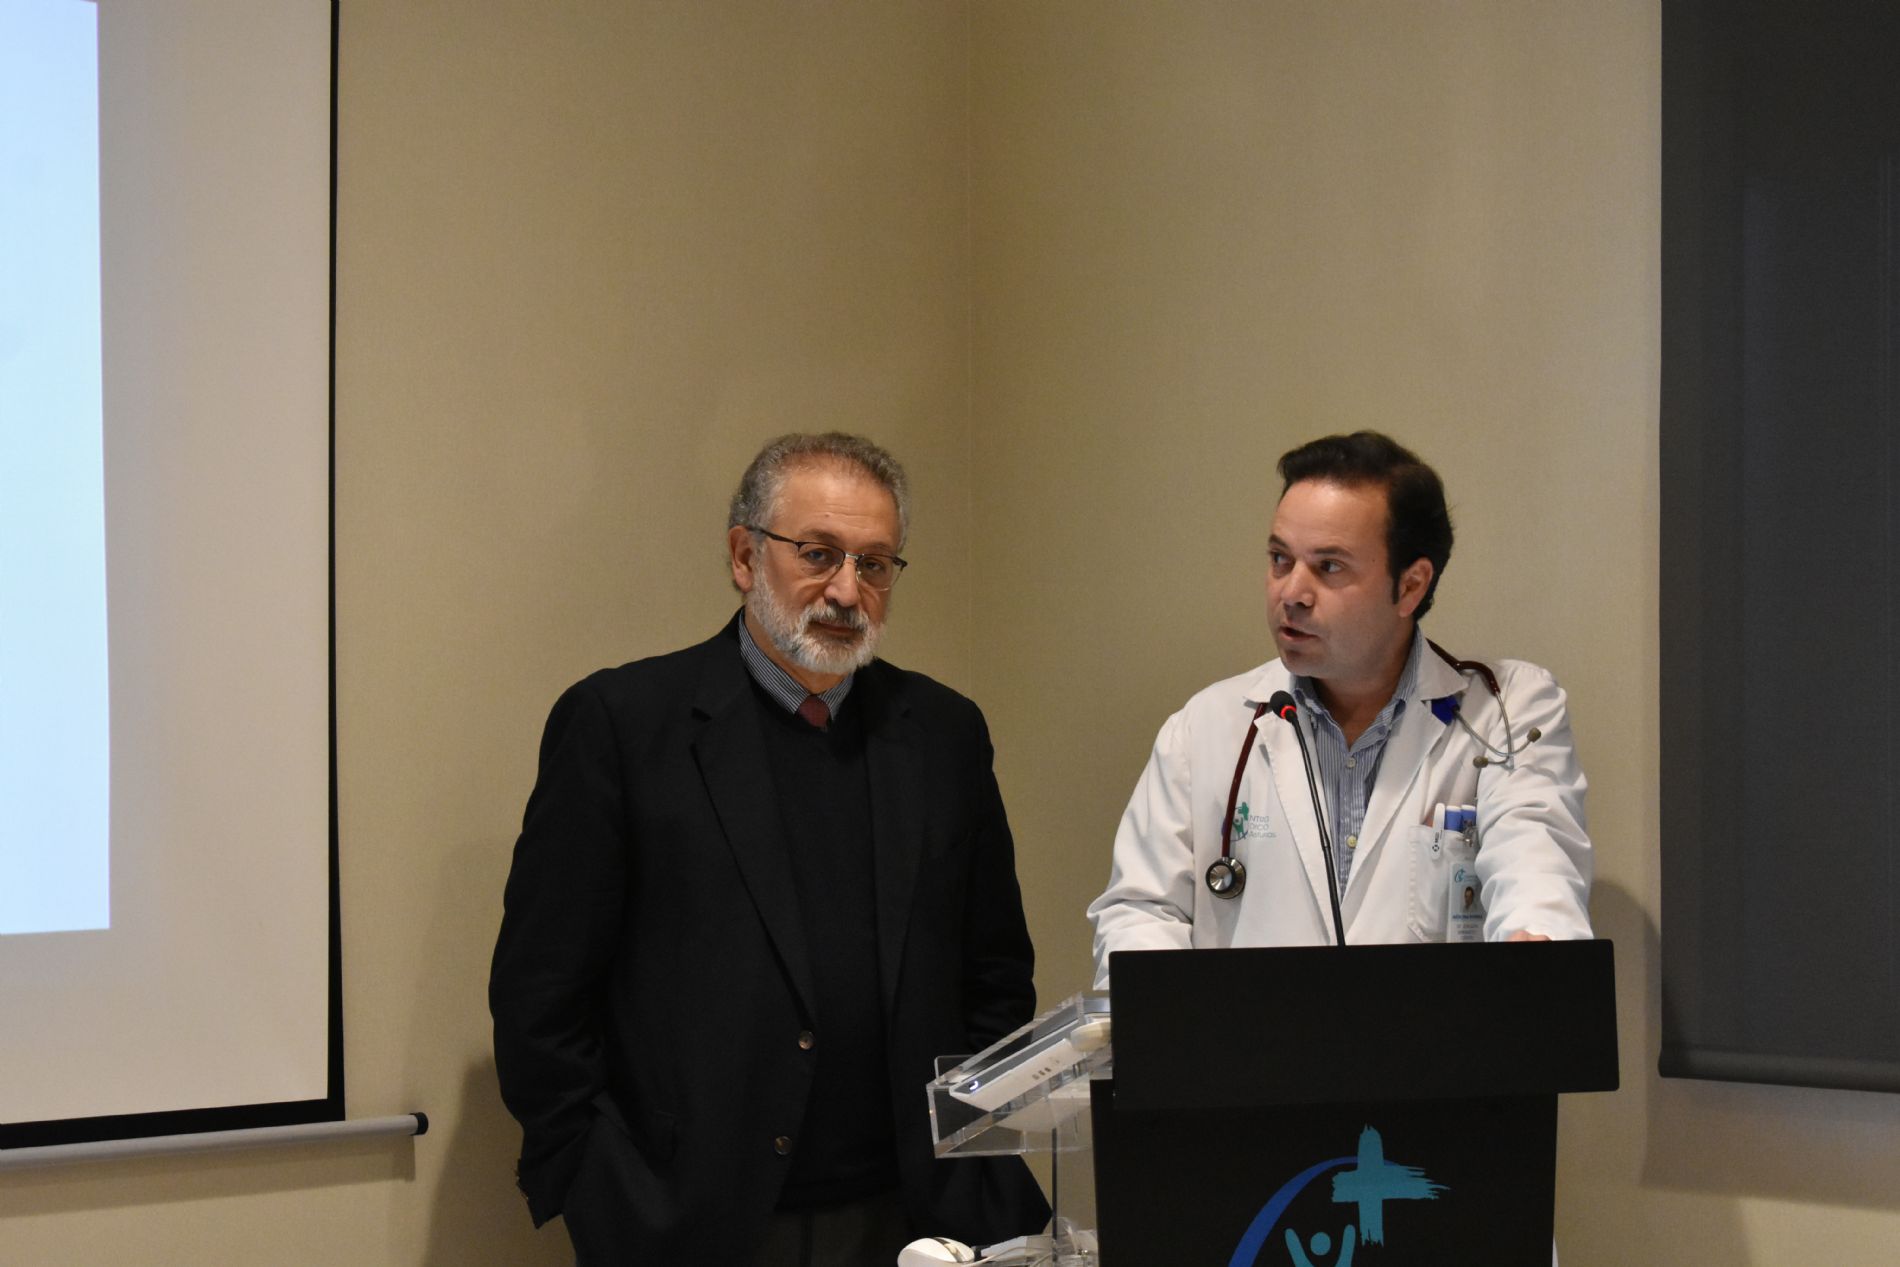 Sesión clínica de Daniel López-Acuña sobre el Coronavirus